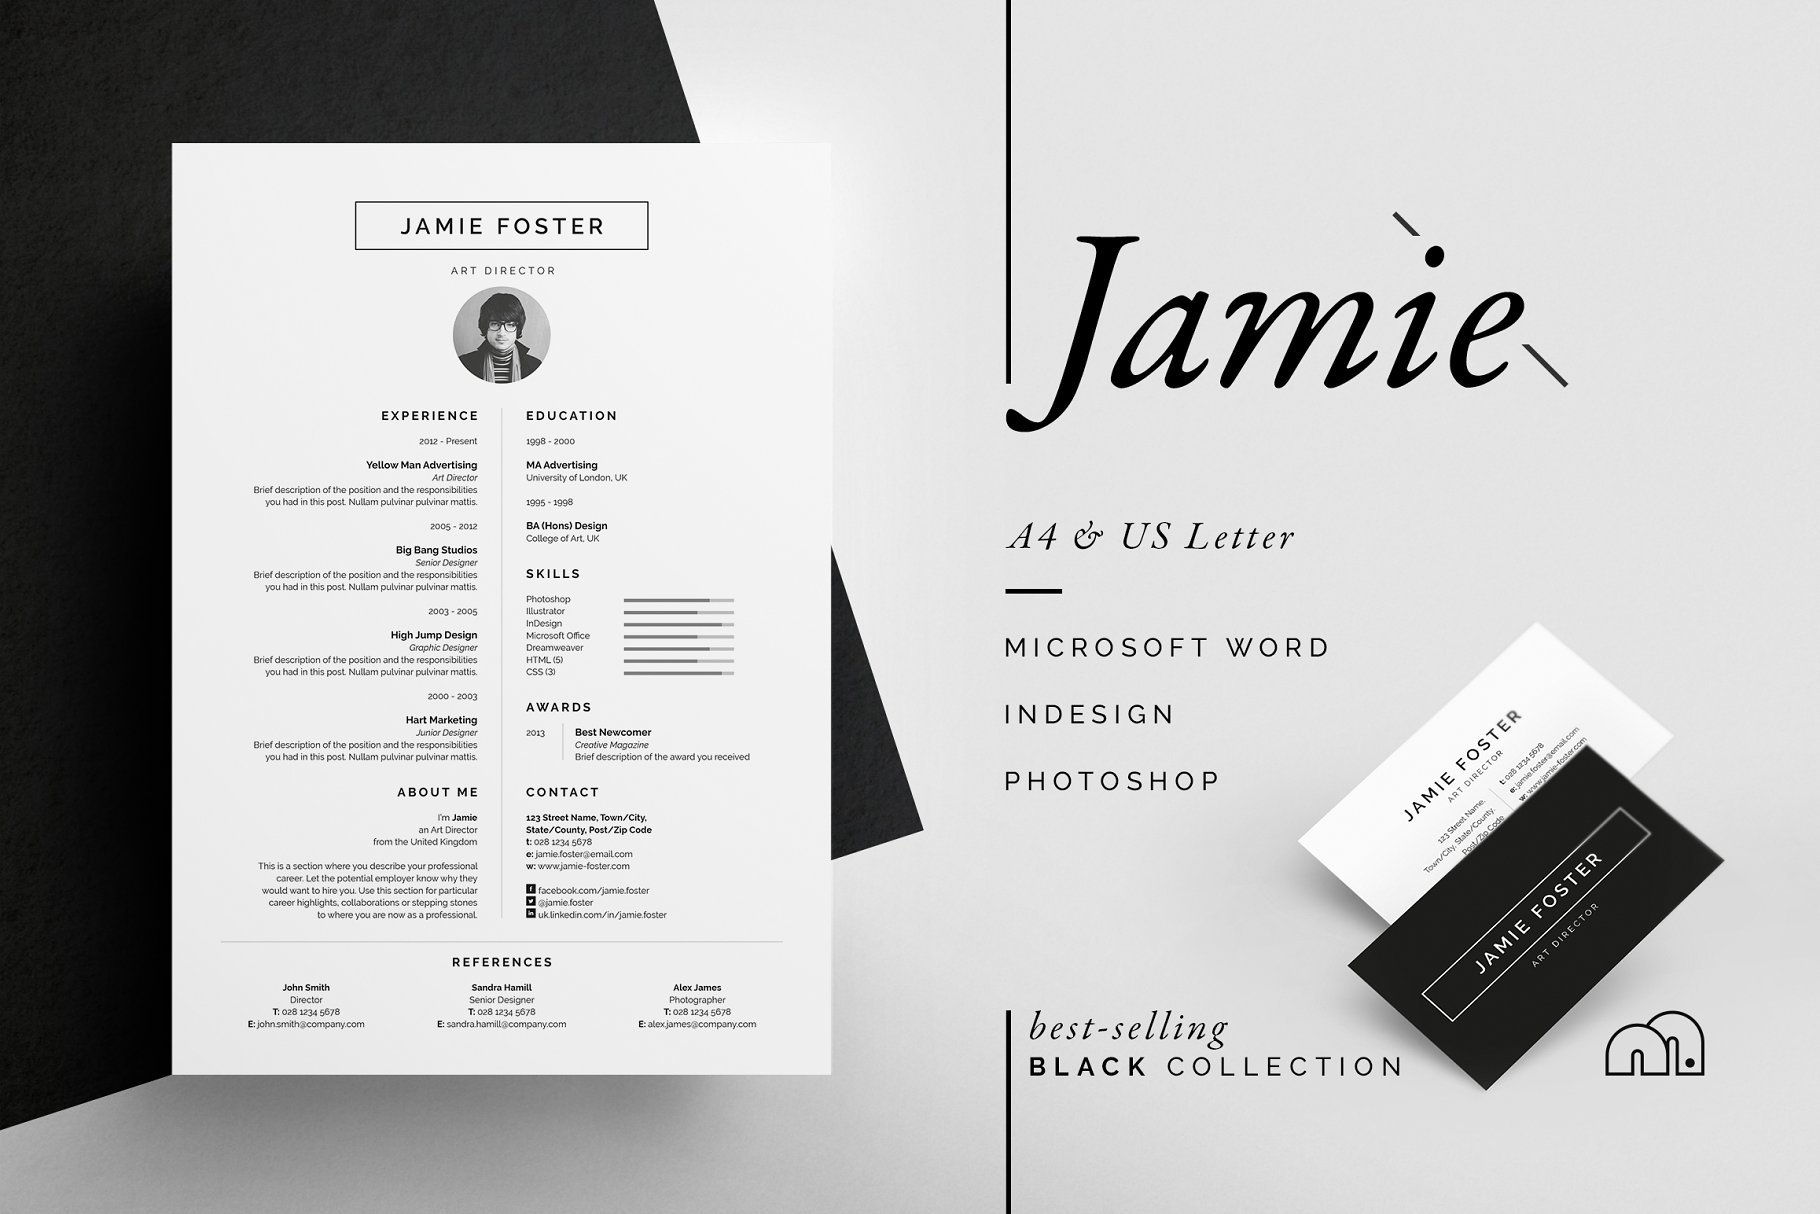 53漂亮个性的简历模板 Jamie – Resume CV